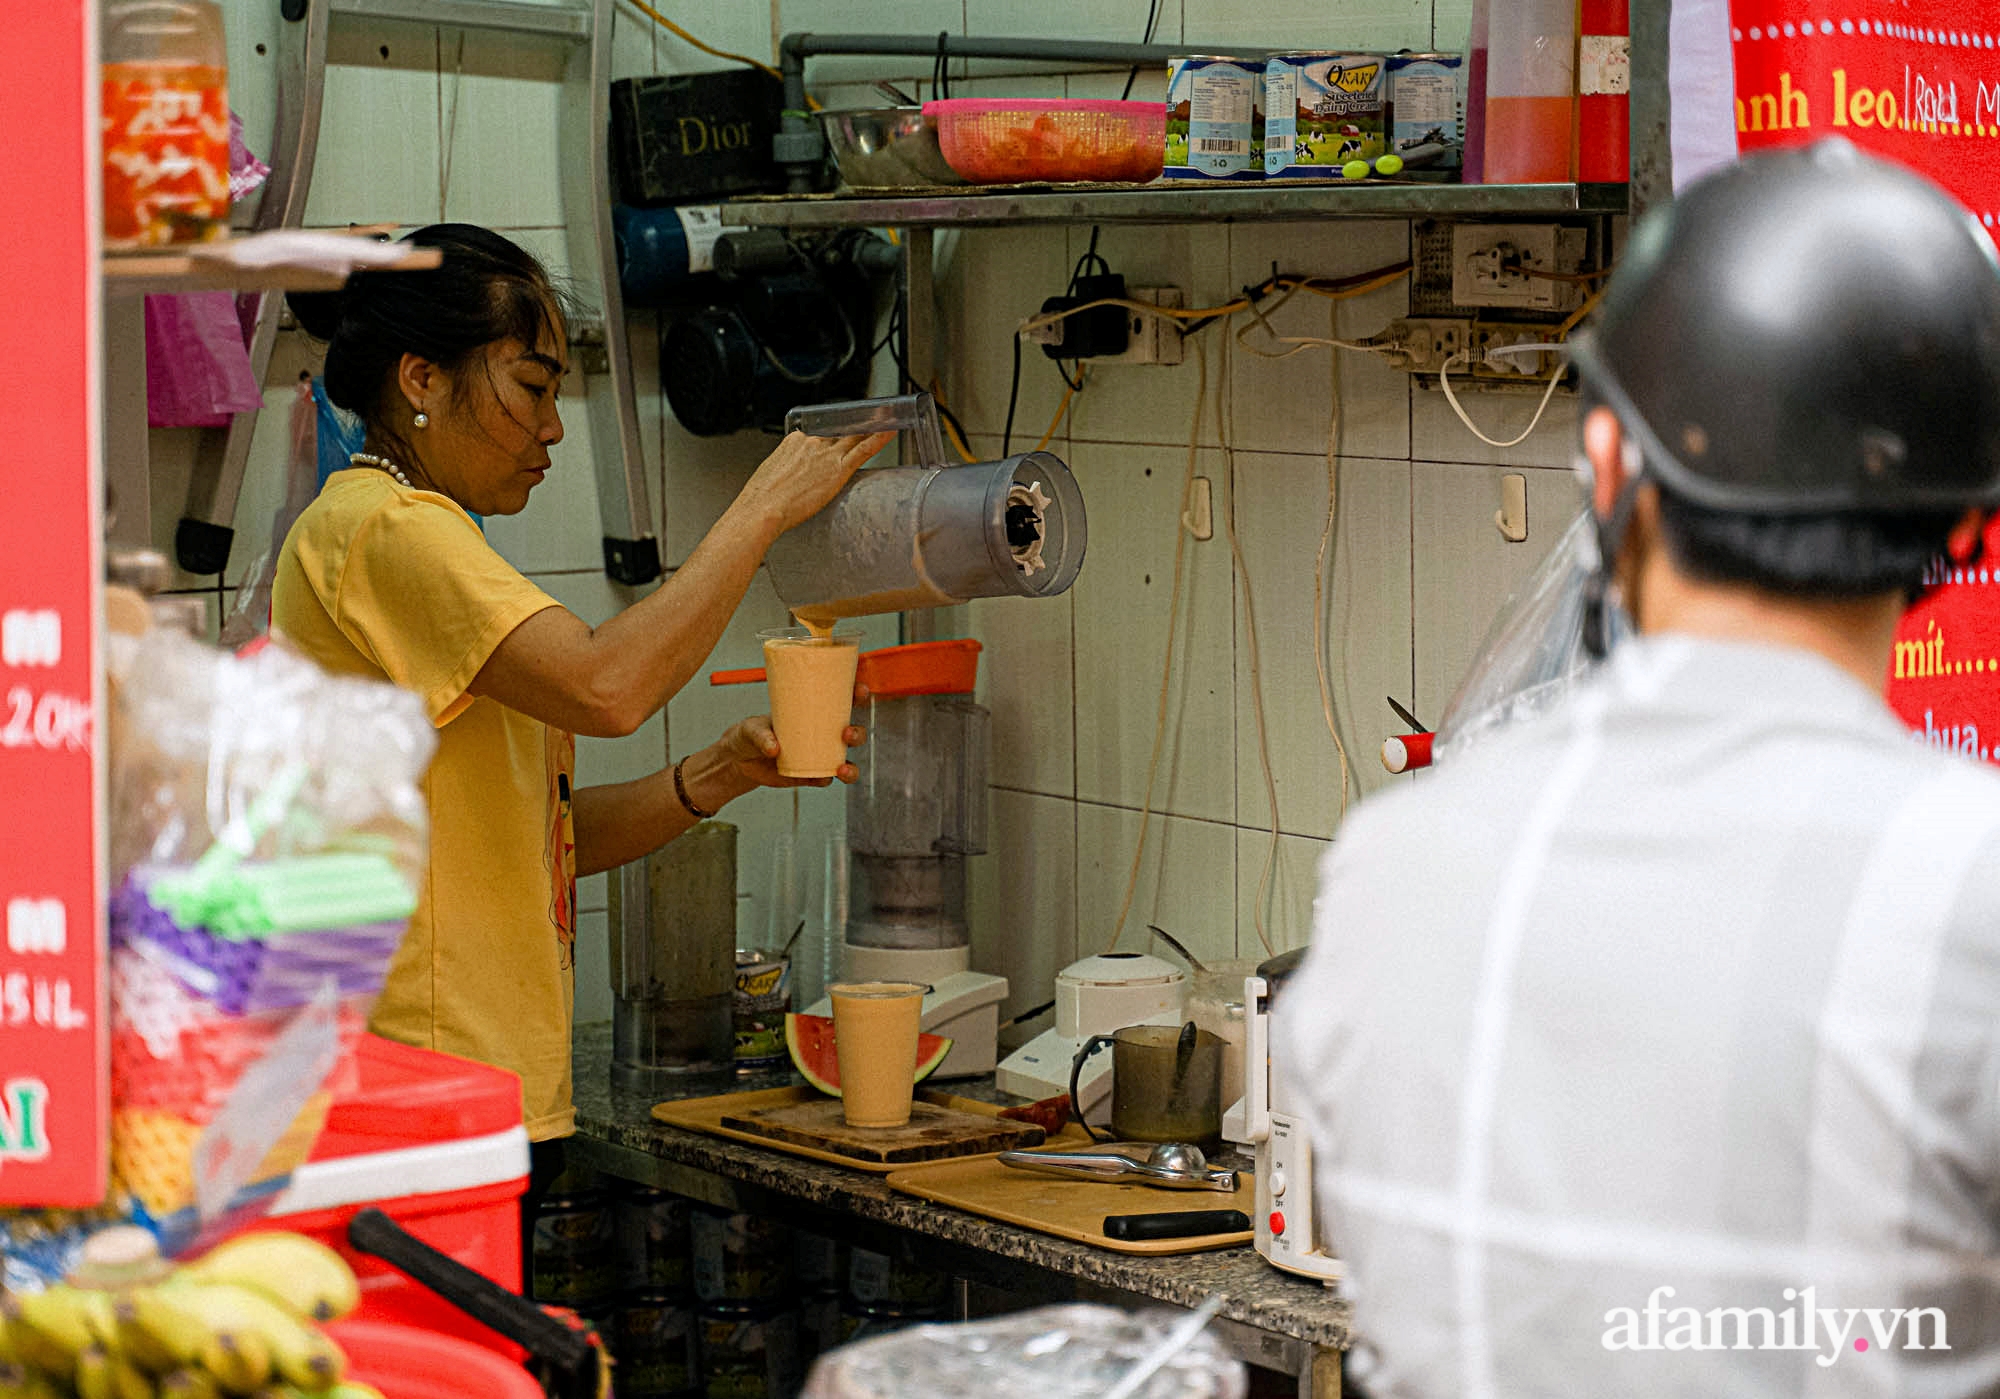 Nắng nóng mới bắt đầu, tiệm nước ép hoa quả chỉ 3m2 trong con ngõ bé xíu ở Hà Nội thu lời cả chục triệu nhờ bán 700 cốc mỗi ngày - Ảnh 5.